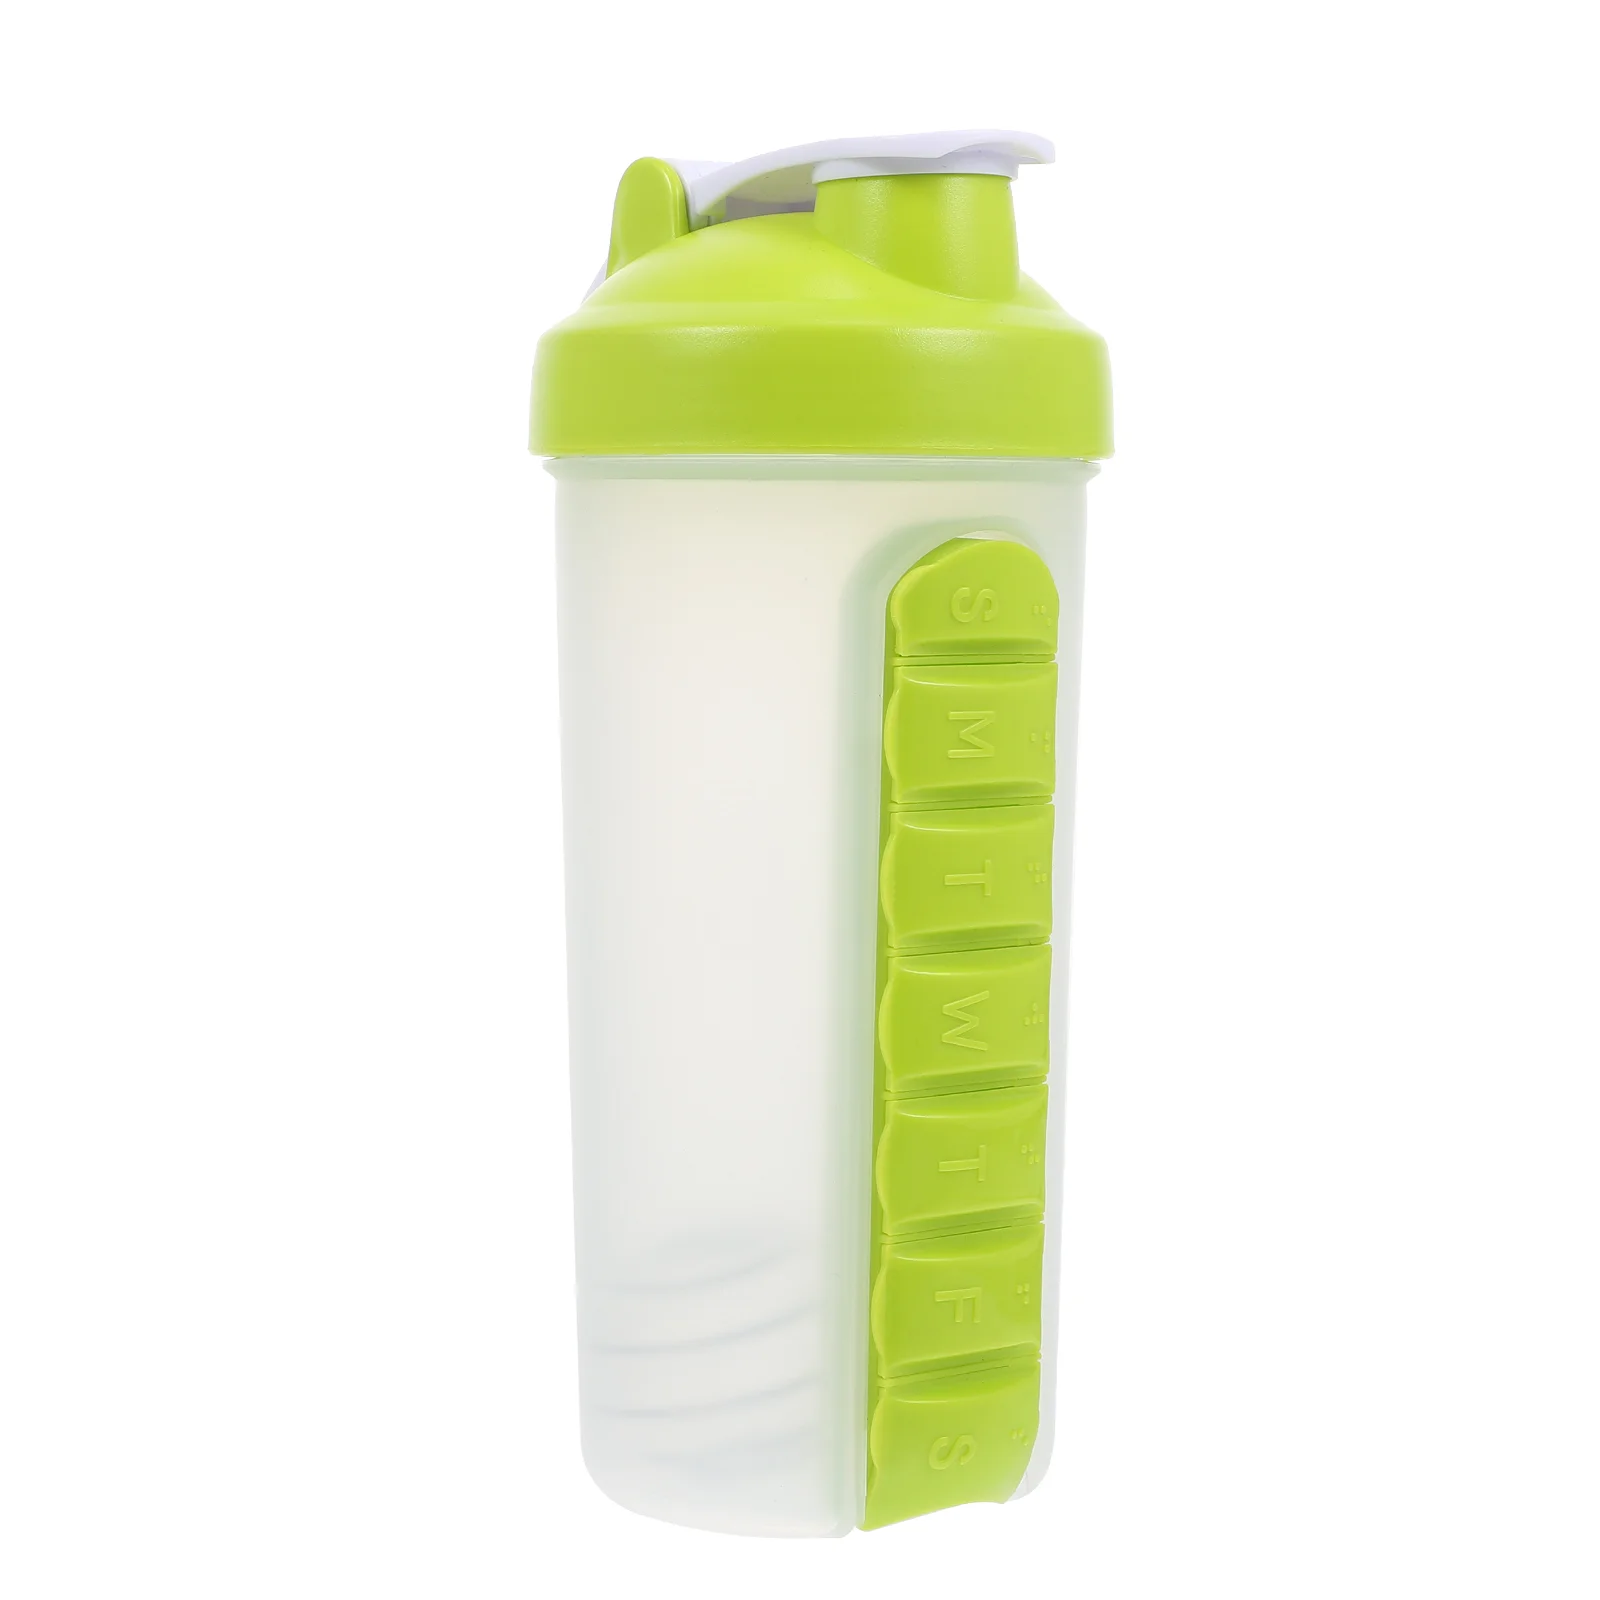 https://ae01.alicdn.com/kf/S940e51593b0f43599d867300e0b2b9b4c/Bottle-Shaker-Water-Protein-Gym-Bottles-Case-Drink-Mug-Workout-Drinking-Supplement-Kettle-Holder-Box-Storage.jpg